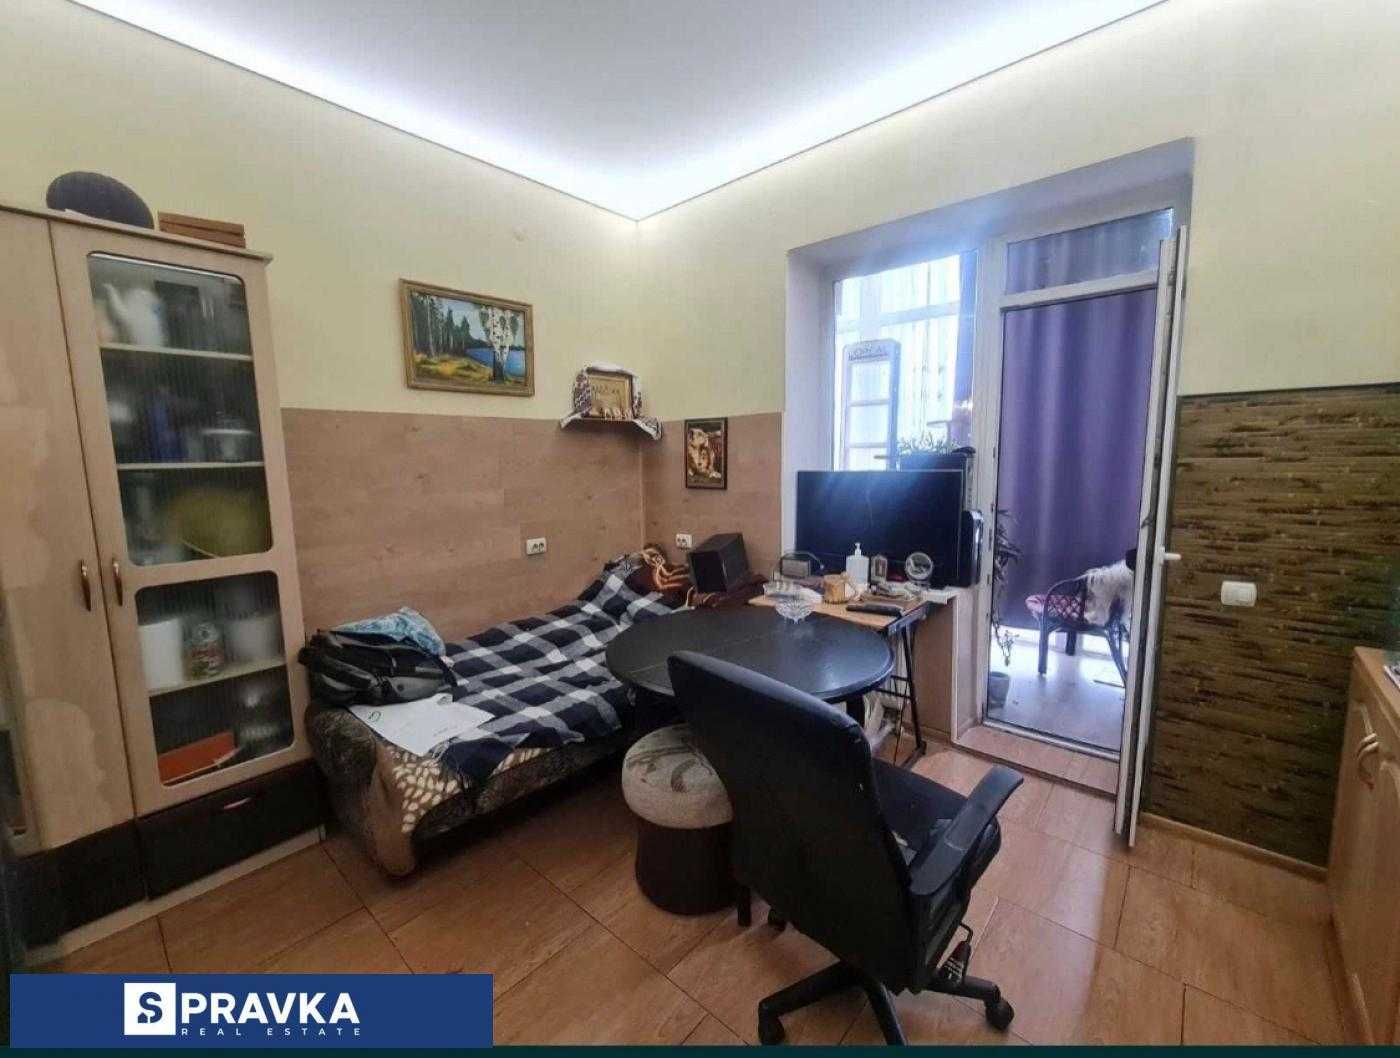 Квартира с большим панарамной лоджией в ЖК "7 Самураев"